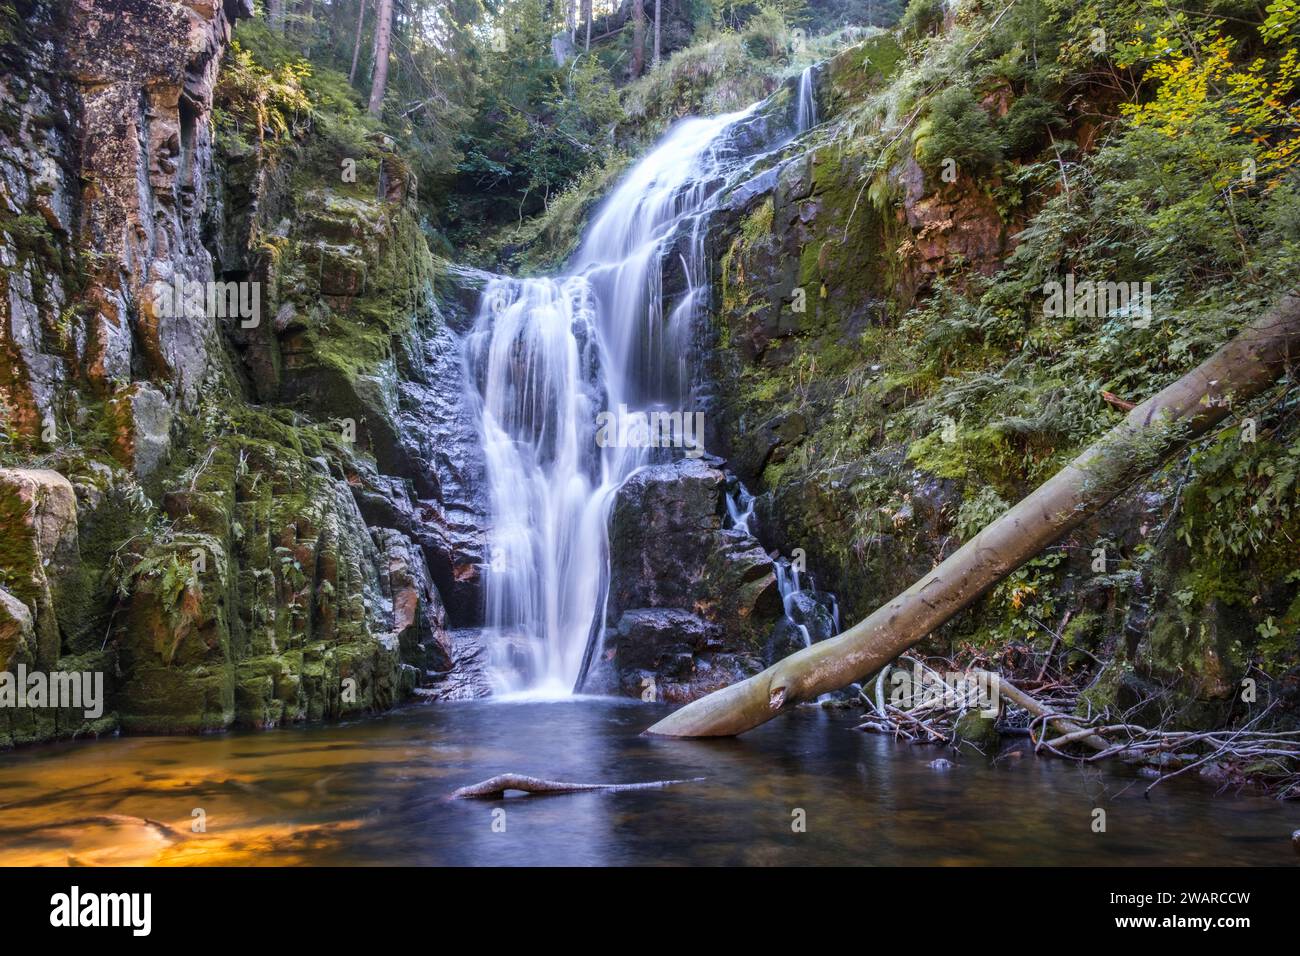 Ein wunderschöner Wasserfall namens Kamienczyk aus der Nähe, mit einem Baumstamm im Wasser. Erschossen in den Bergen einer Stadt namens szklarska poreba in Polen Stockfoto